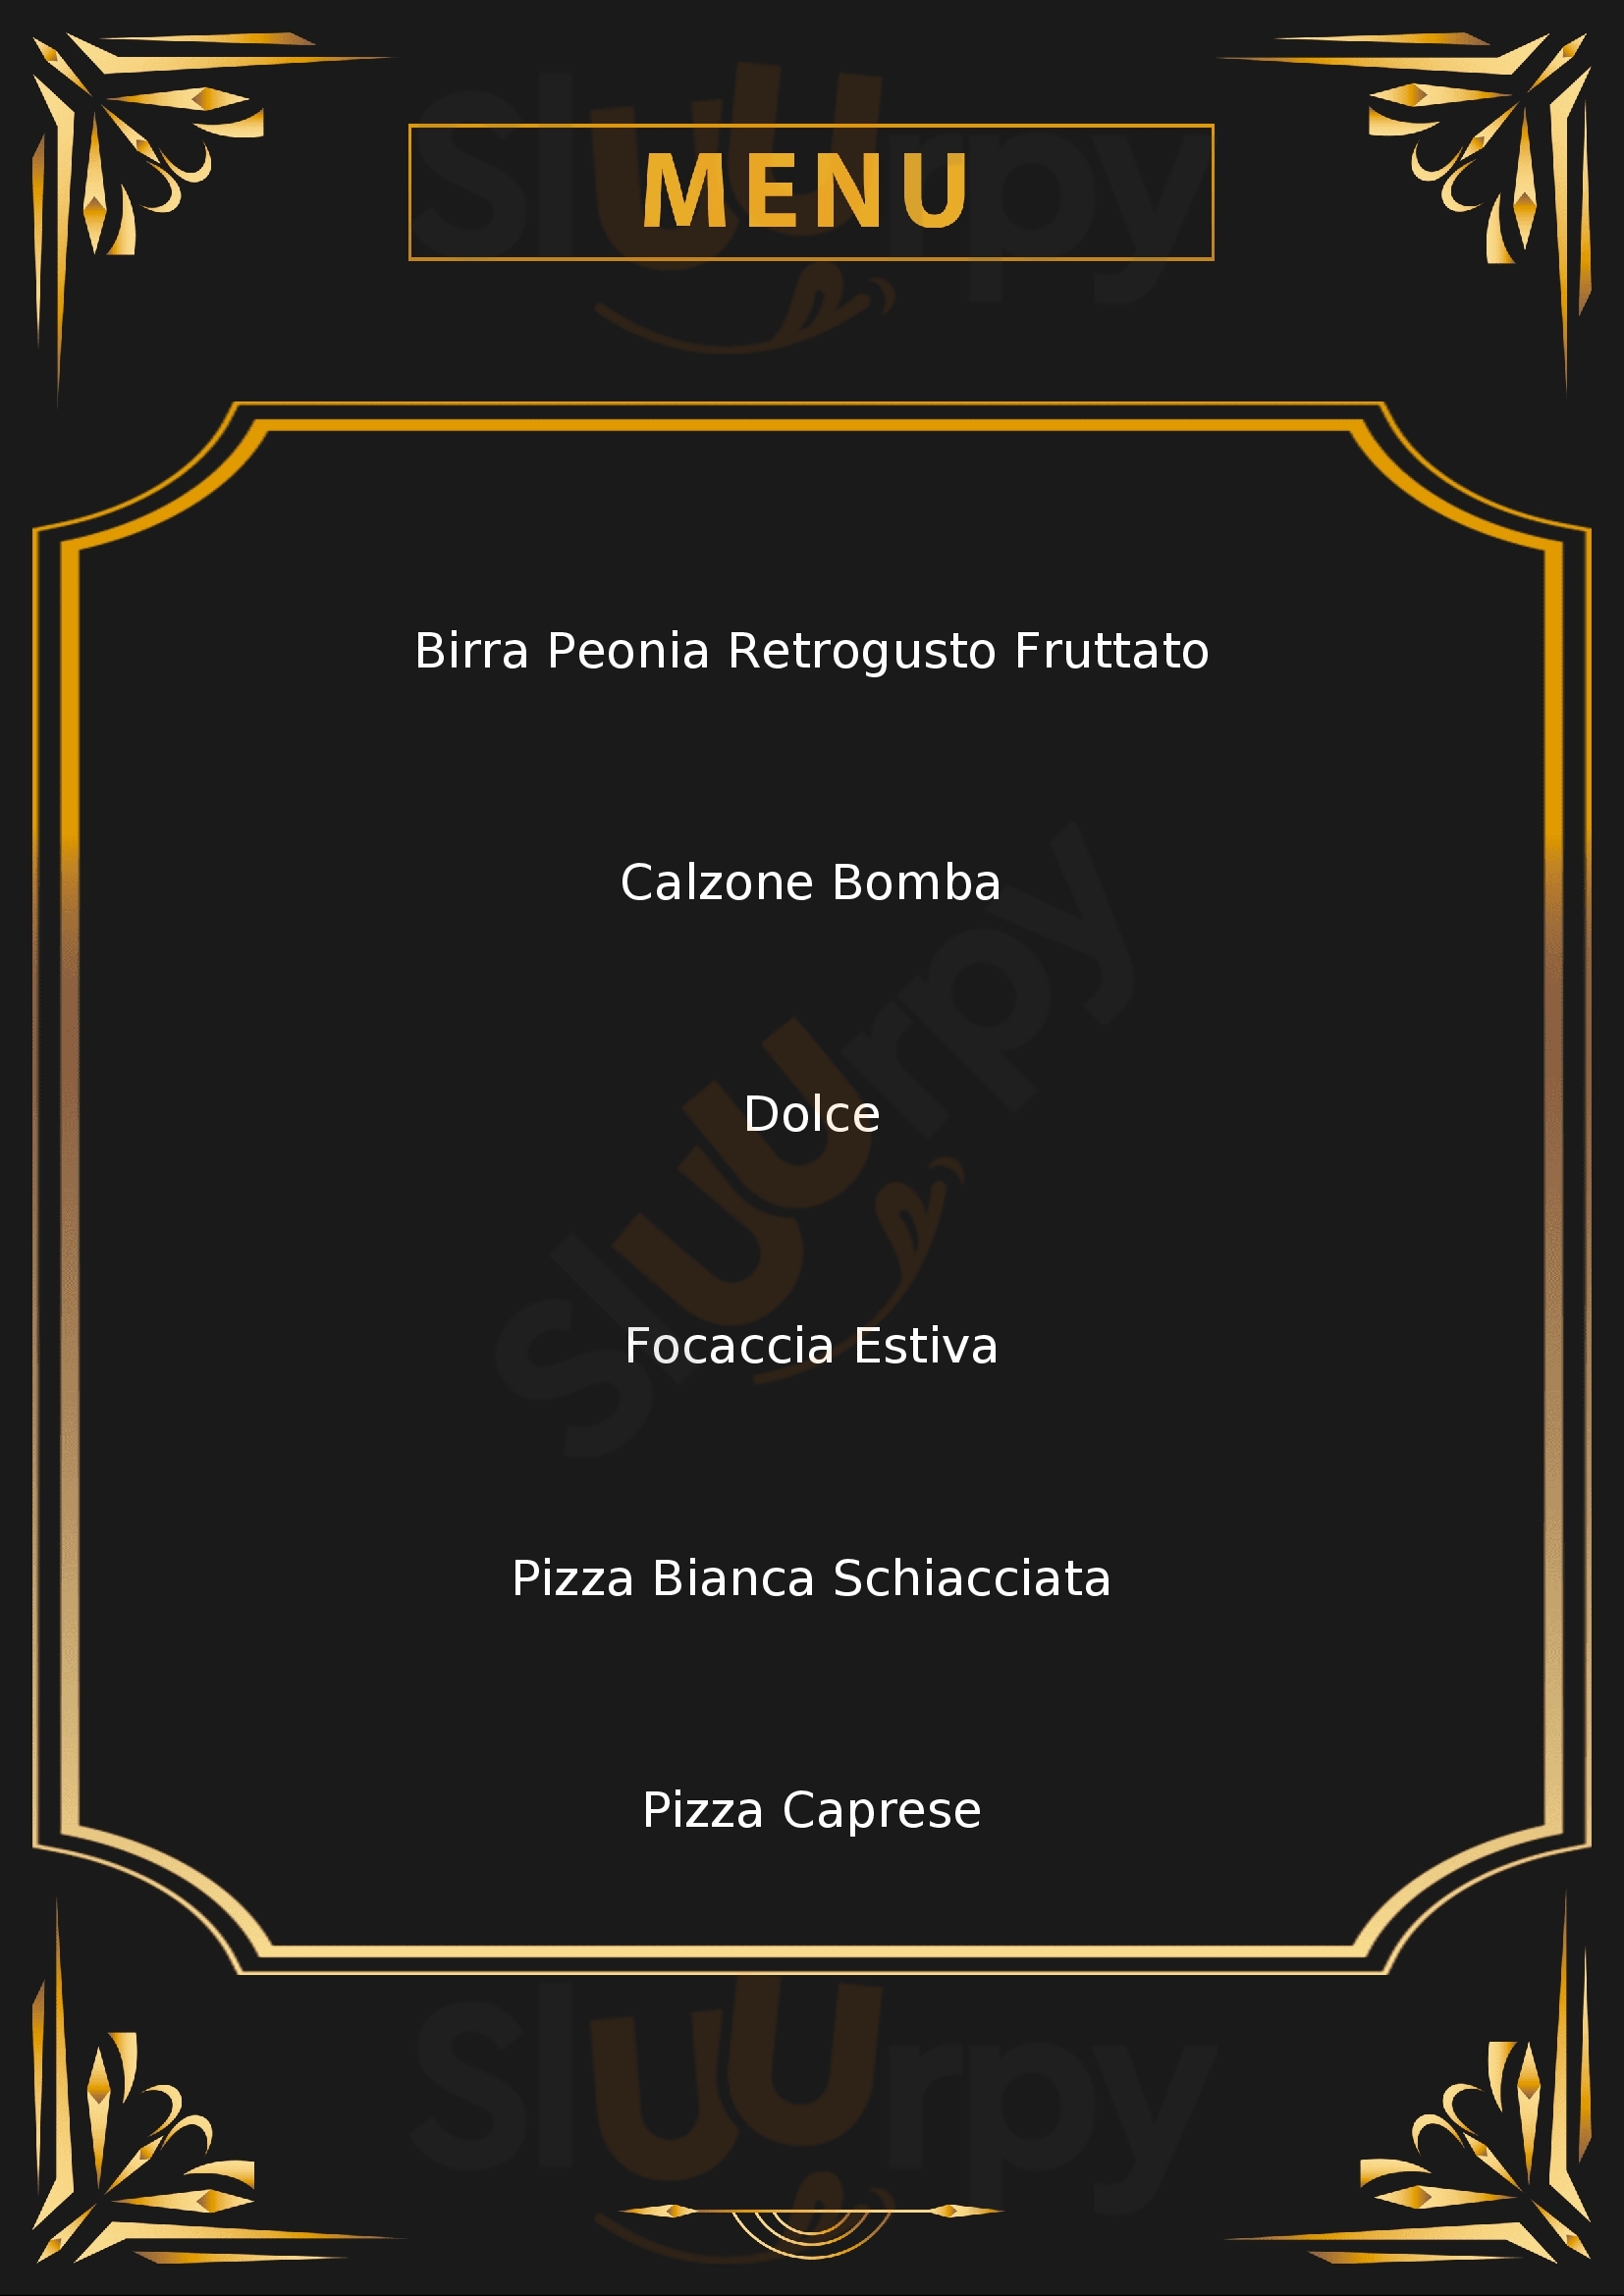 Trattoria Pizzeria Timoline Da Paolo Corte Franca menù 1 pagina